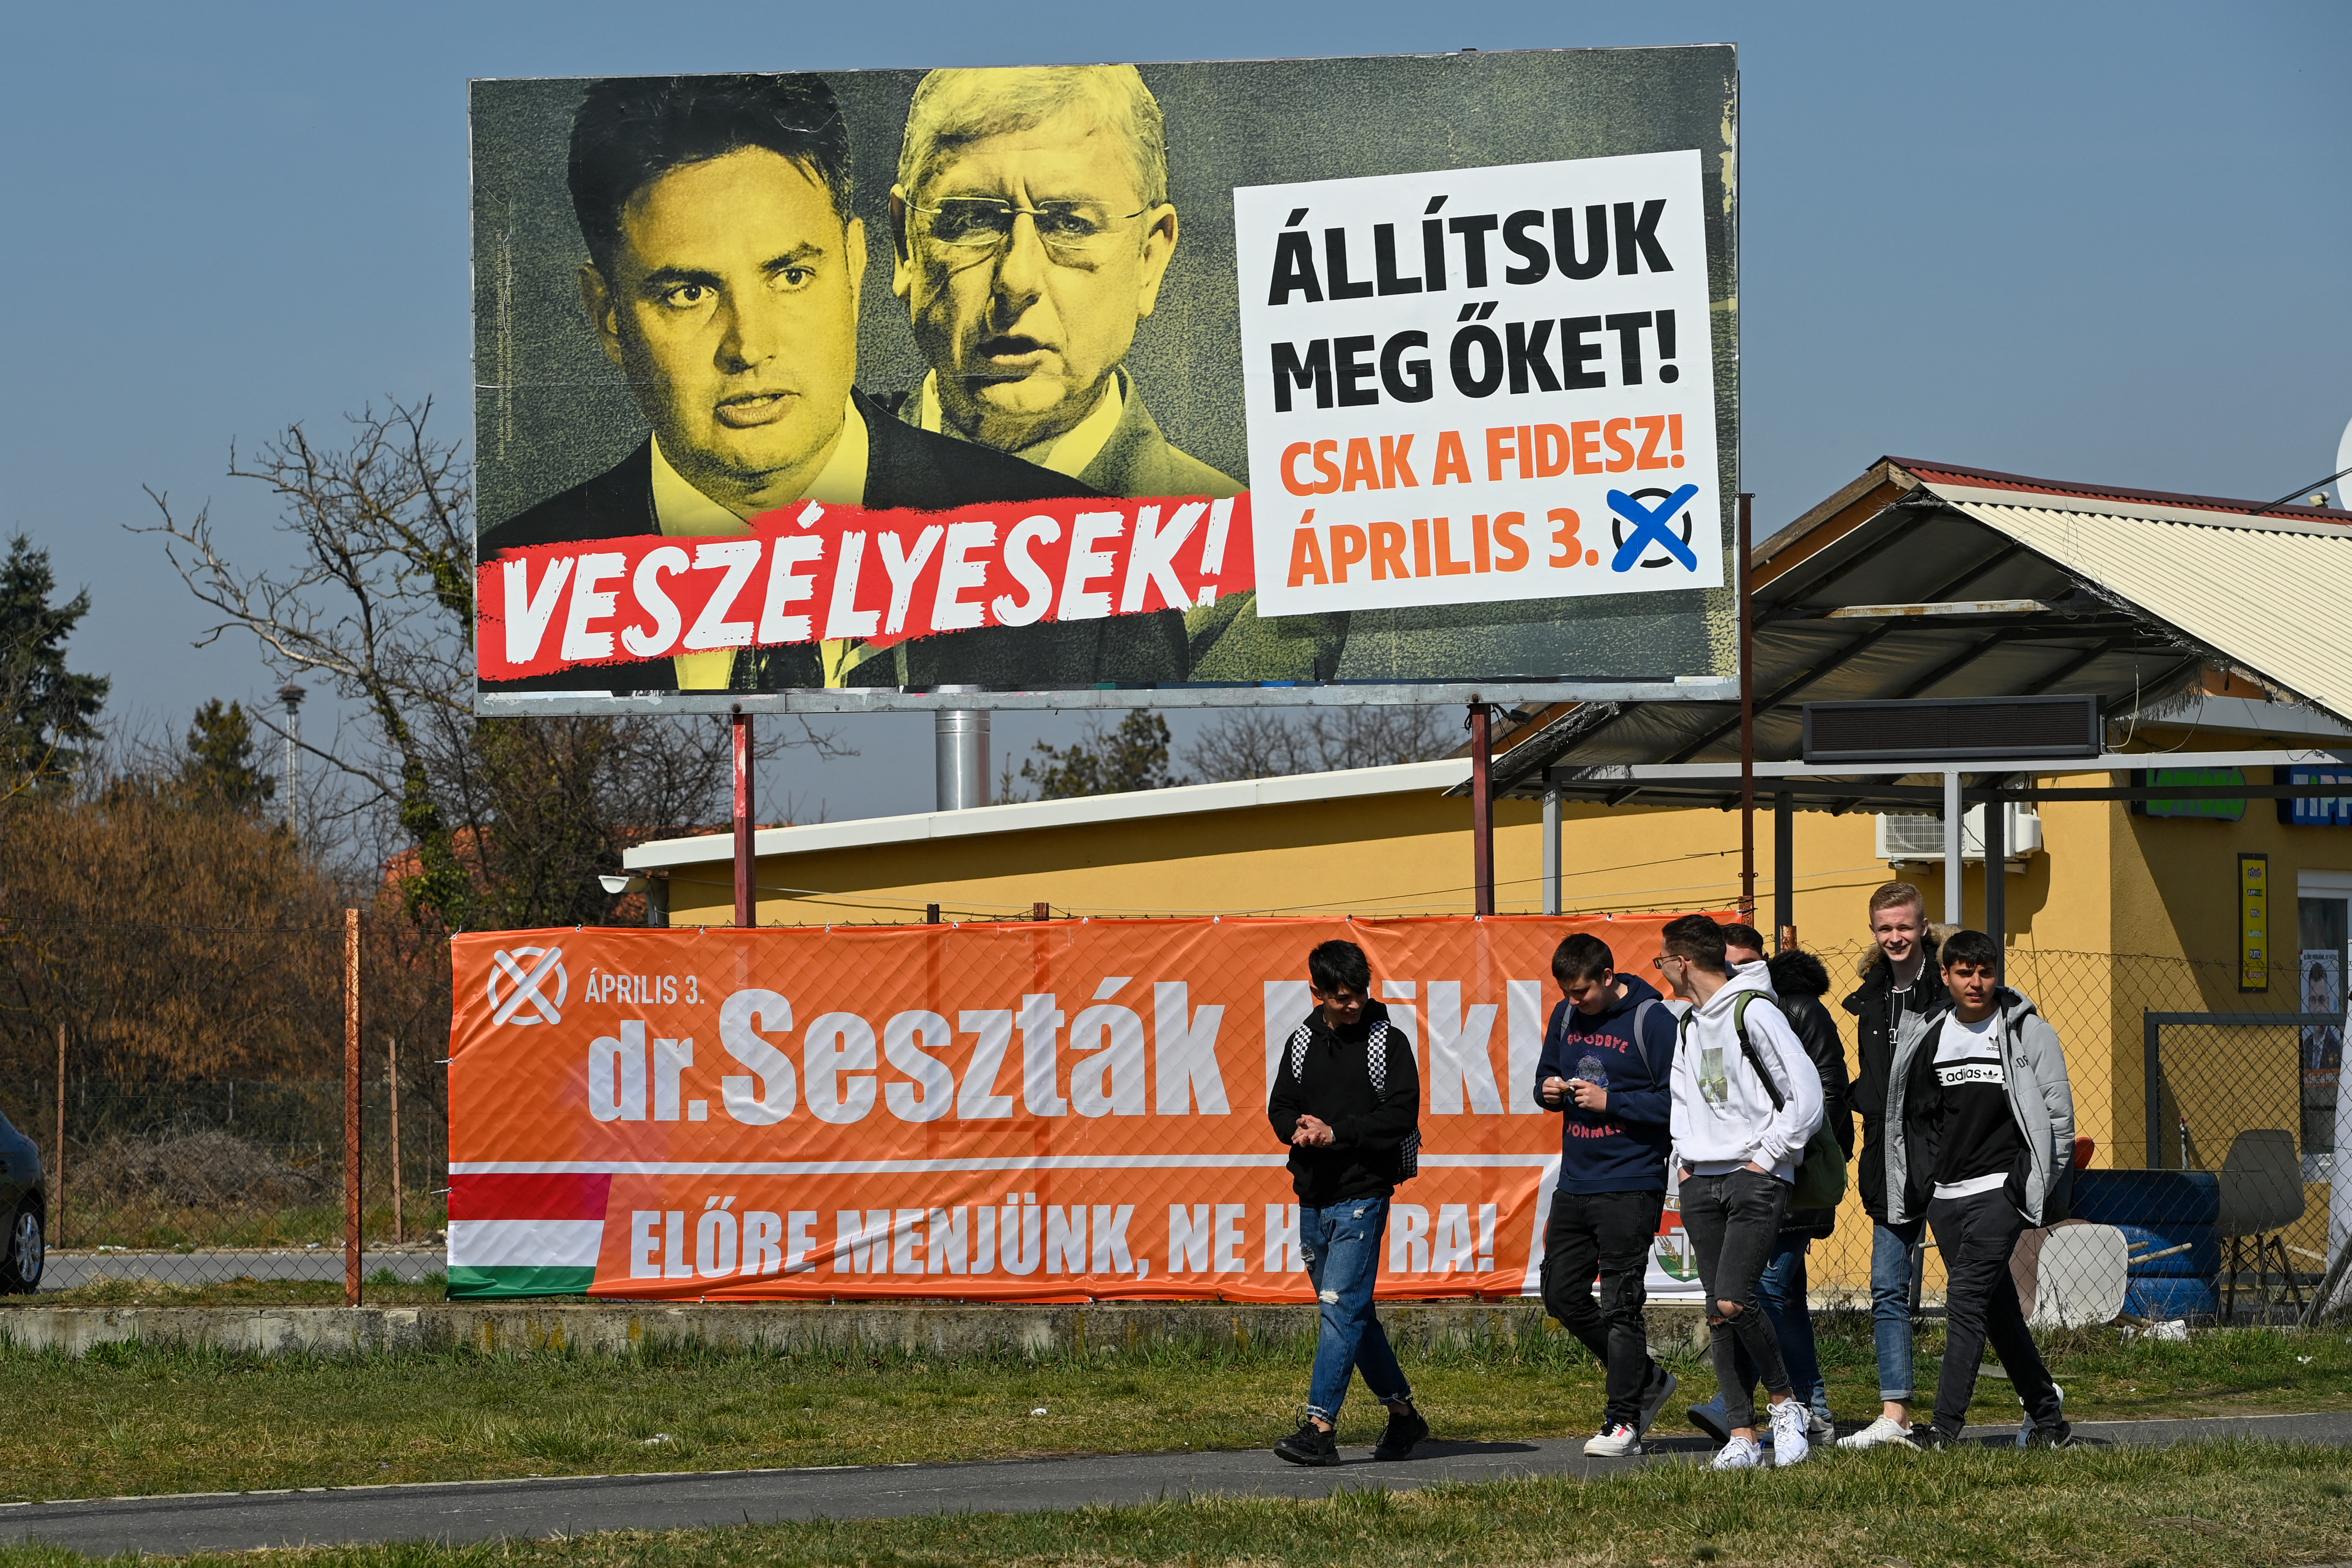 A Fidesz úgy nyeri meg a futóversenyt, hogy a többiek lábát összeköti, majd befut a célba, és közli, hogy győzött